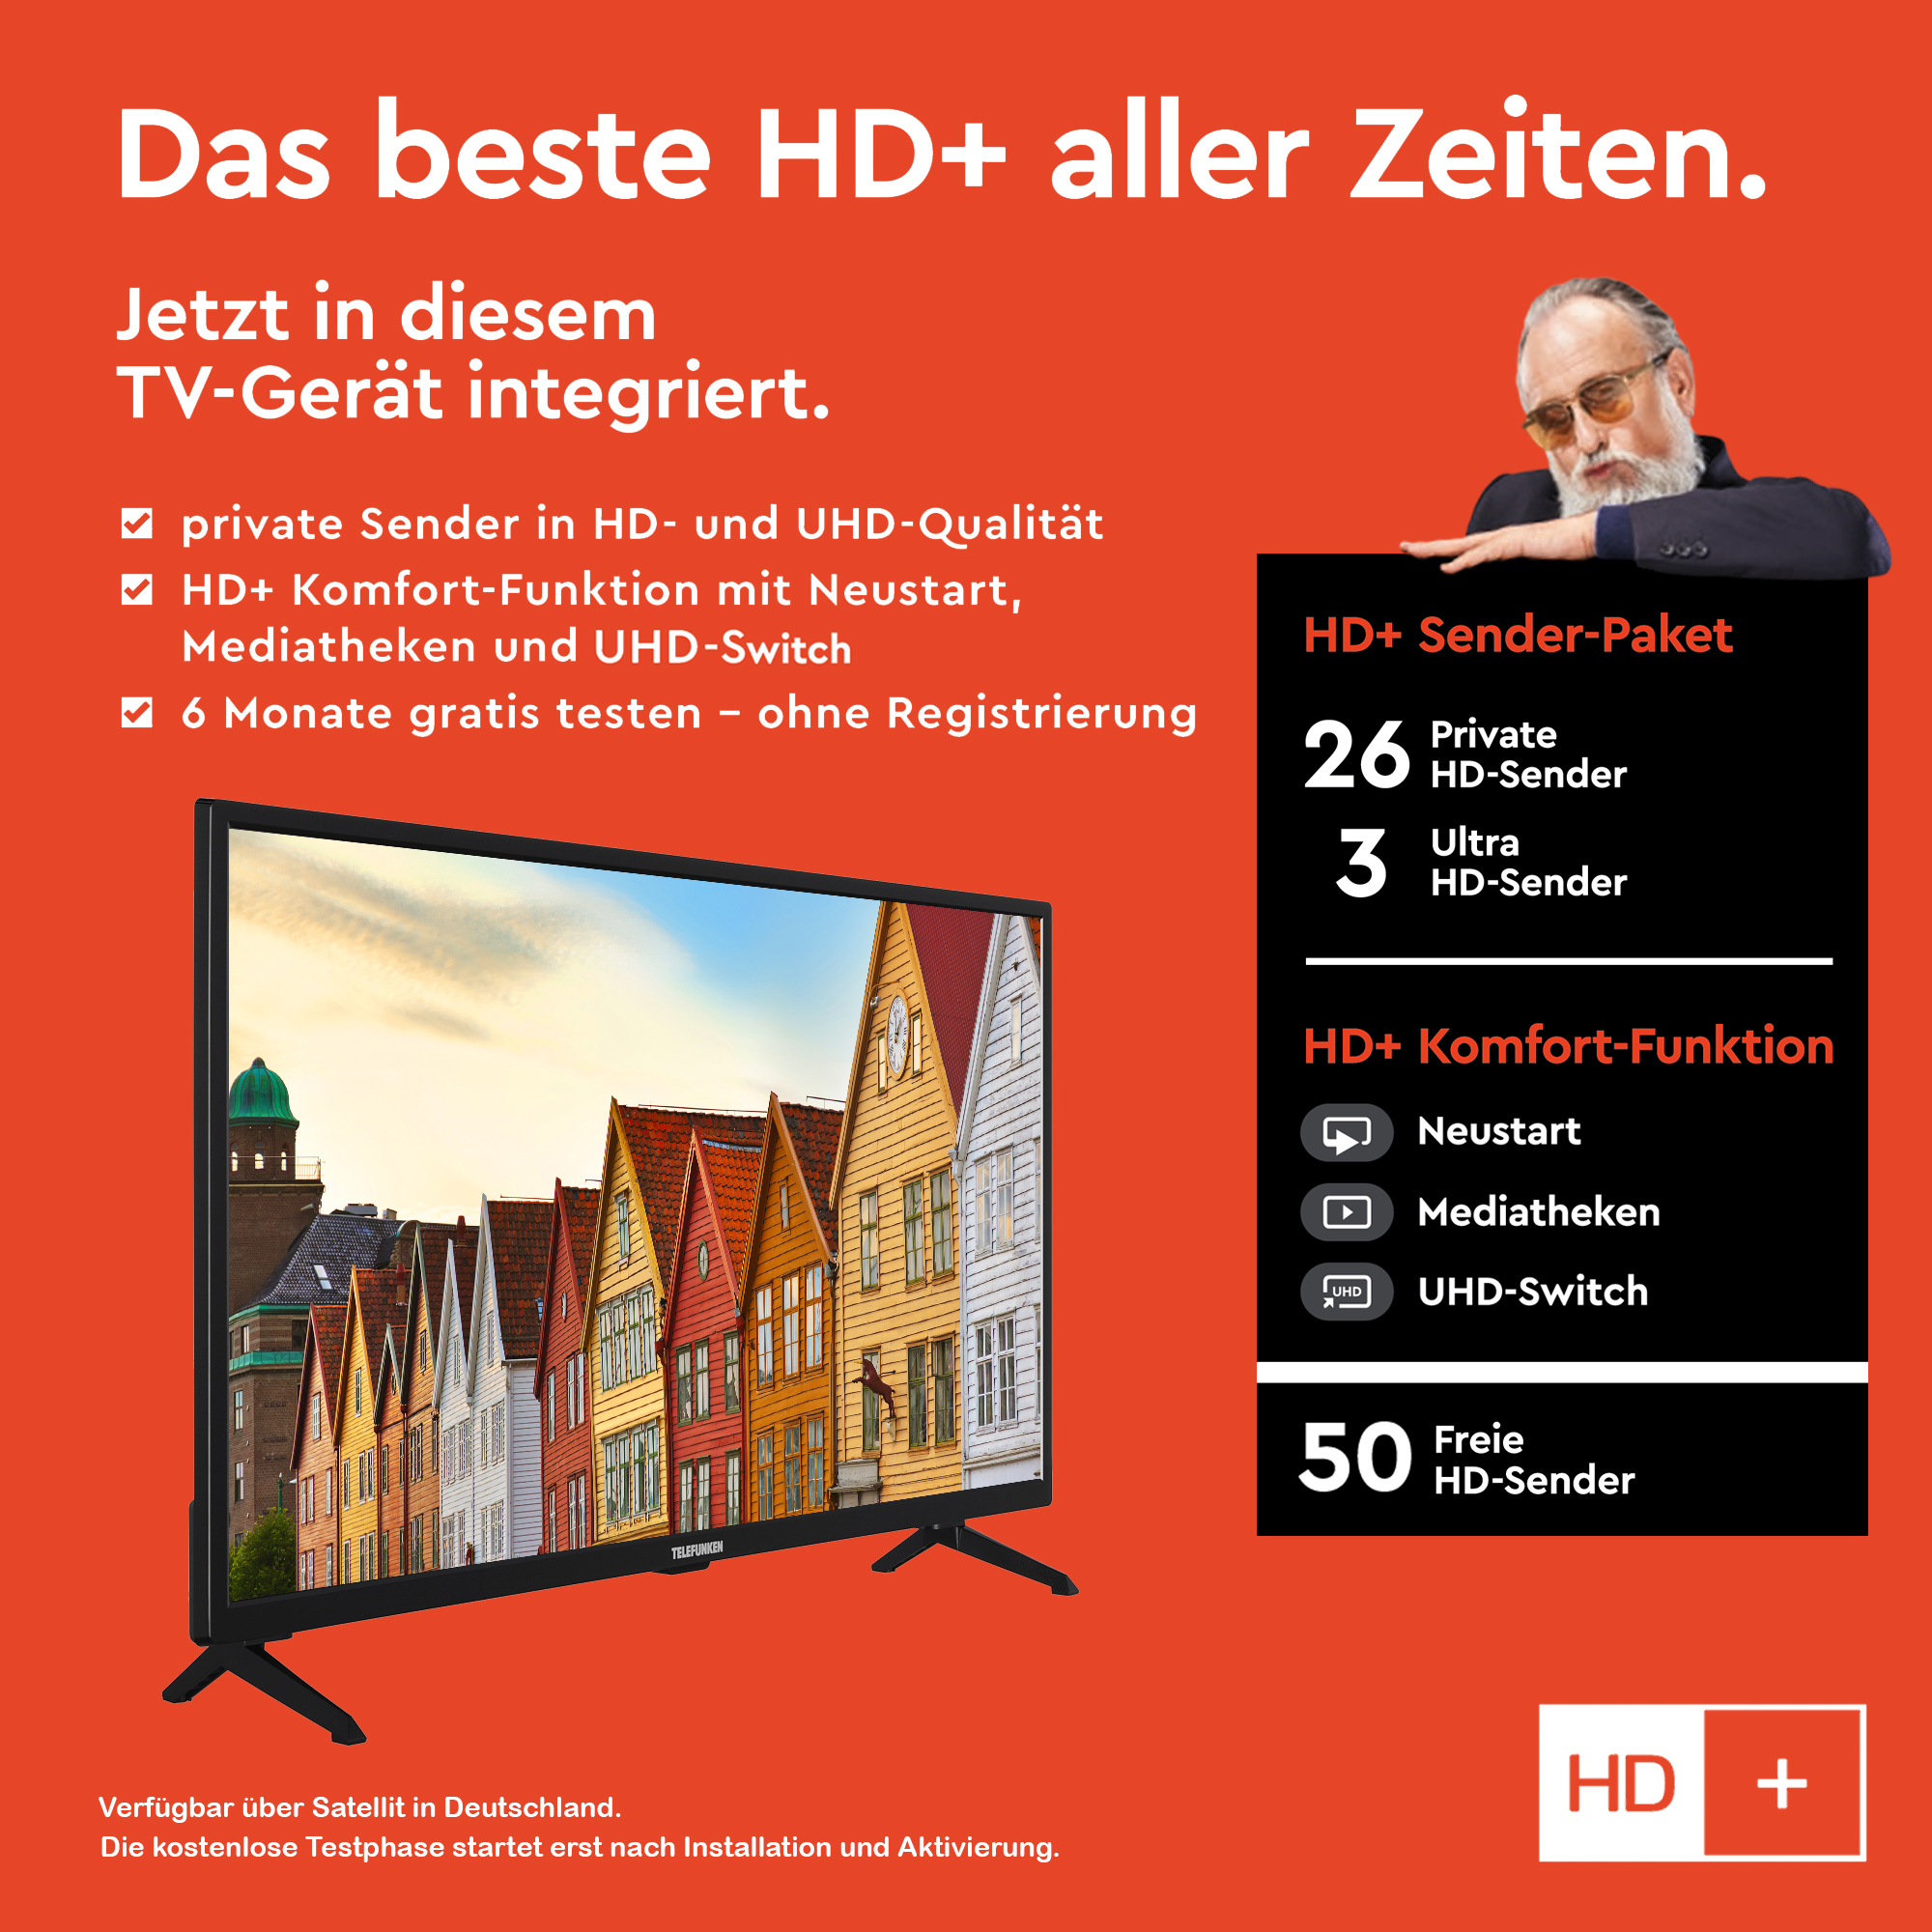 Zoll 32 TELEFUNKEN / TV) Full-HD, XF32SN550SD (Flat, LED SMART 80 TV cm,